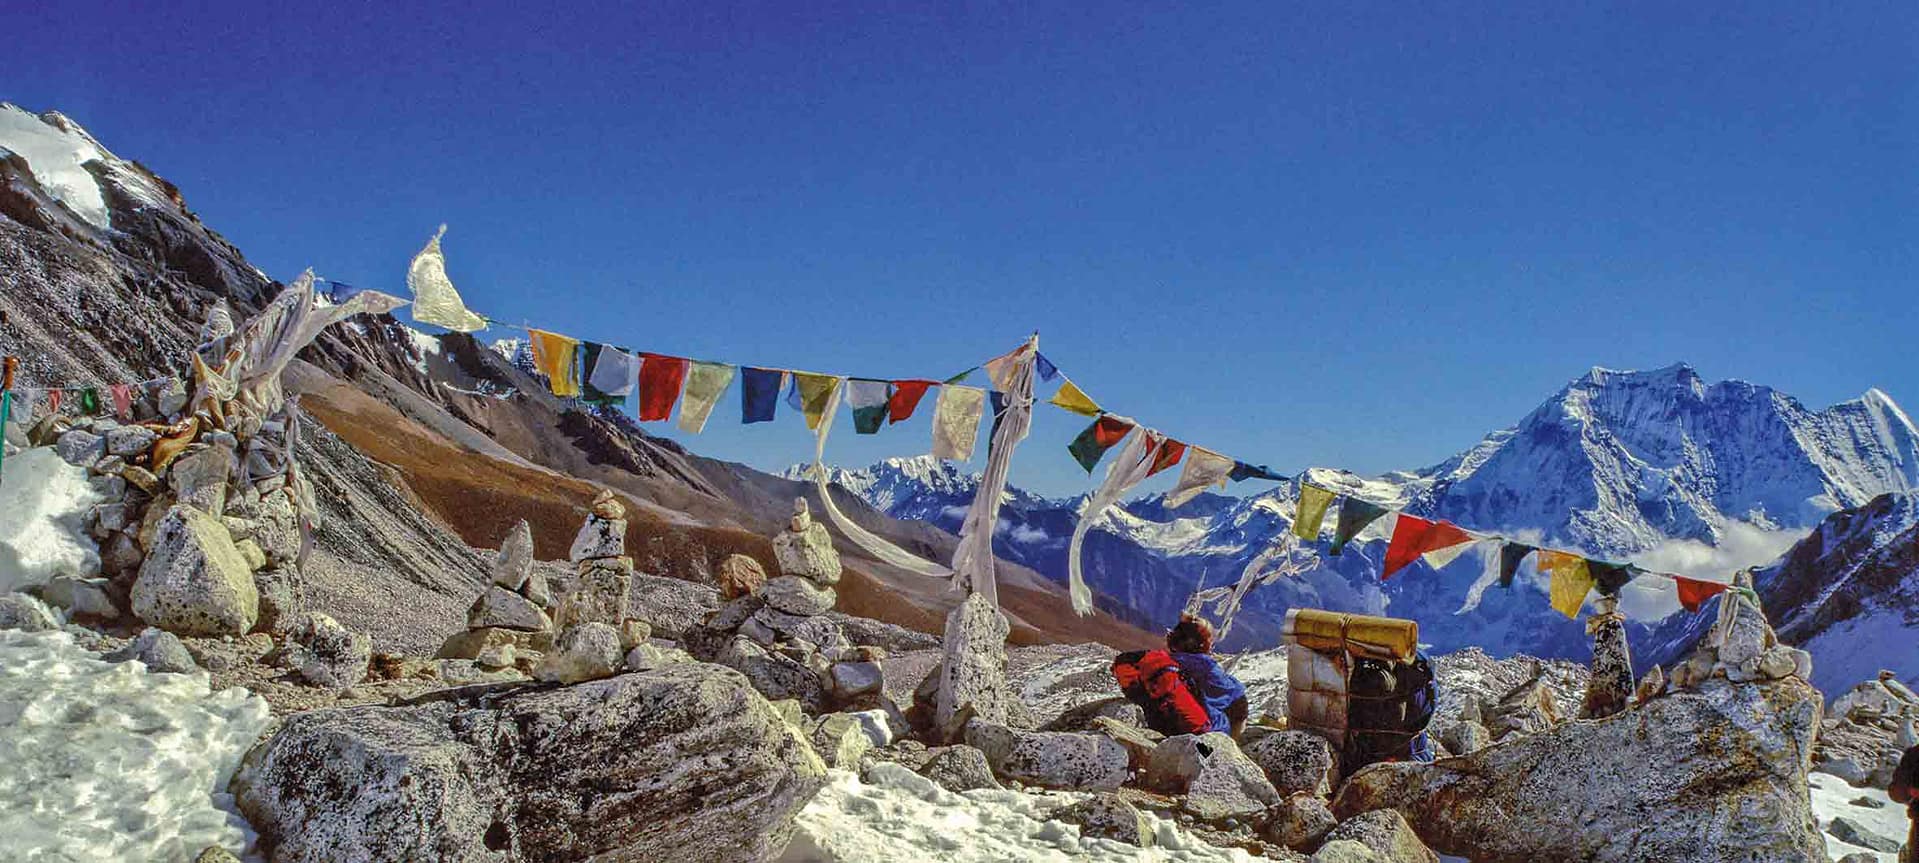 Überquerung des Larkya La, 5160 m, Nepal